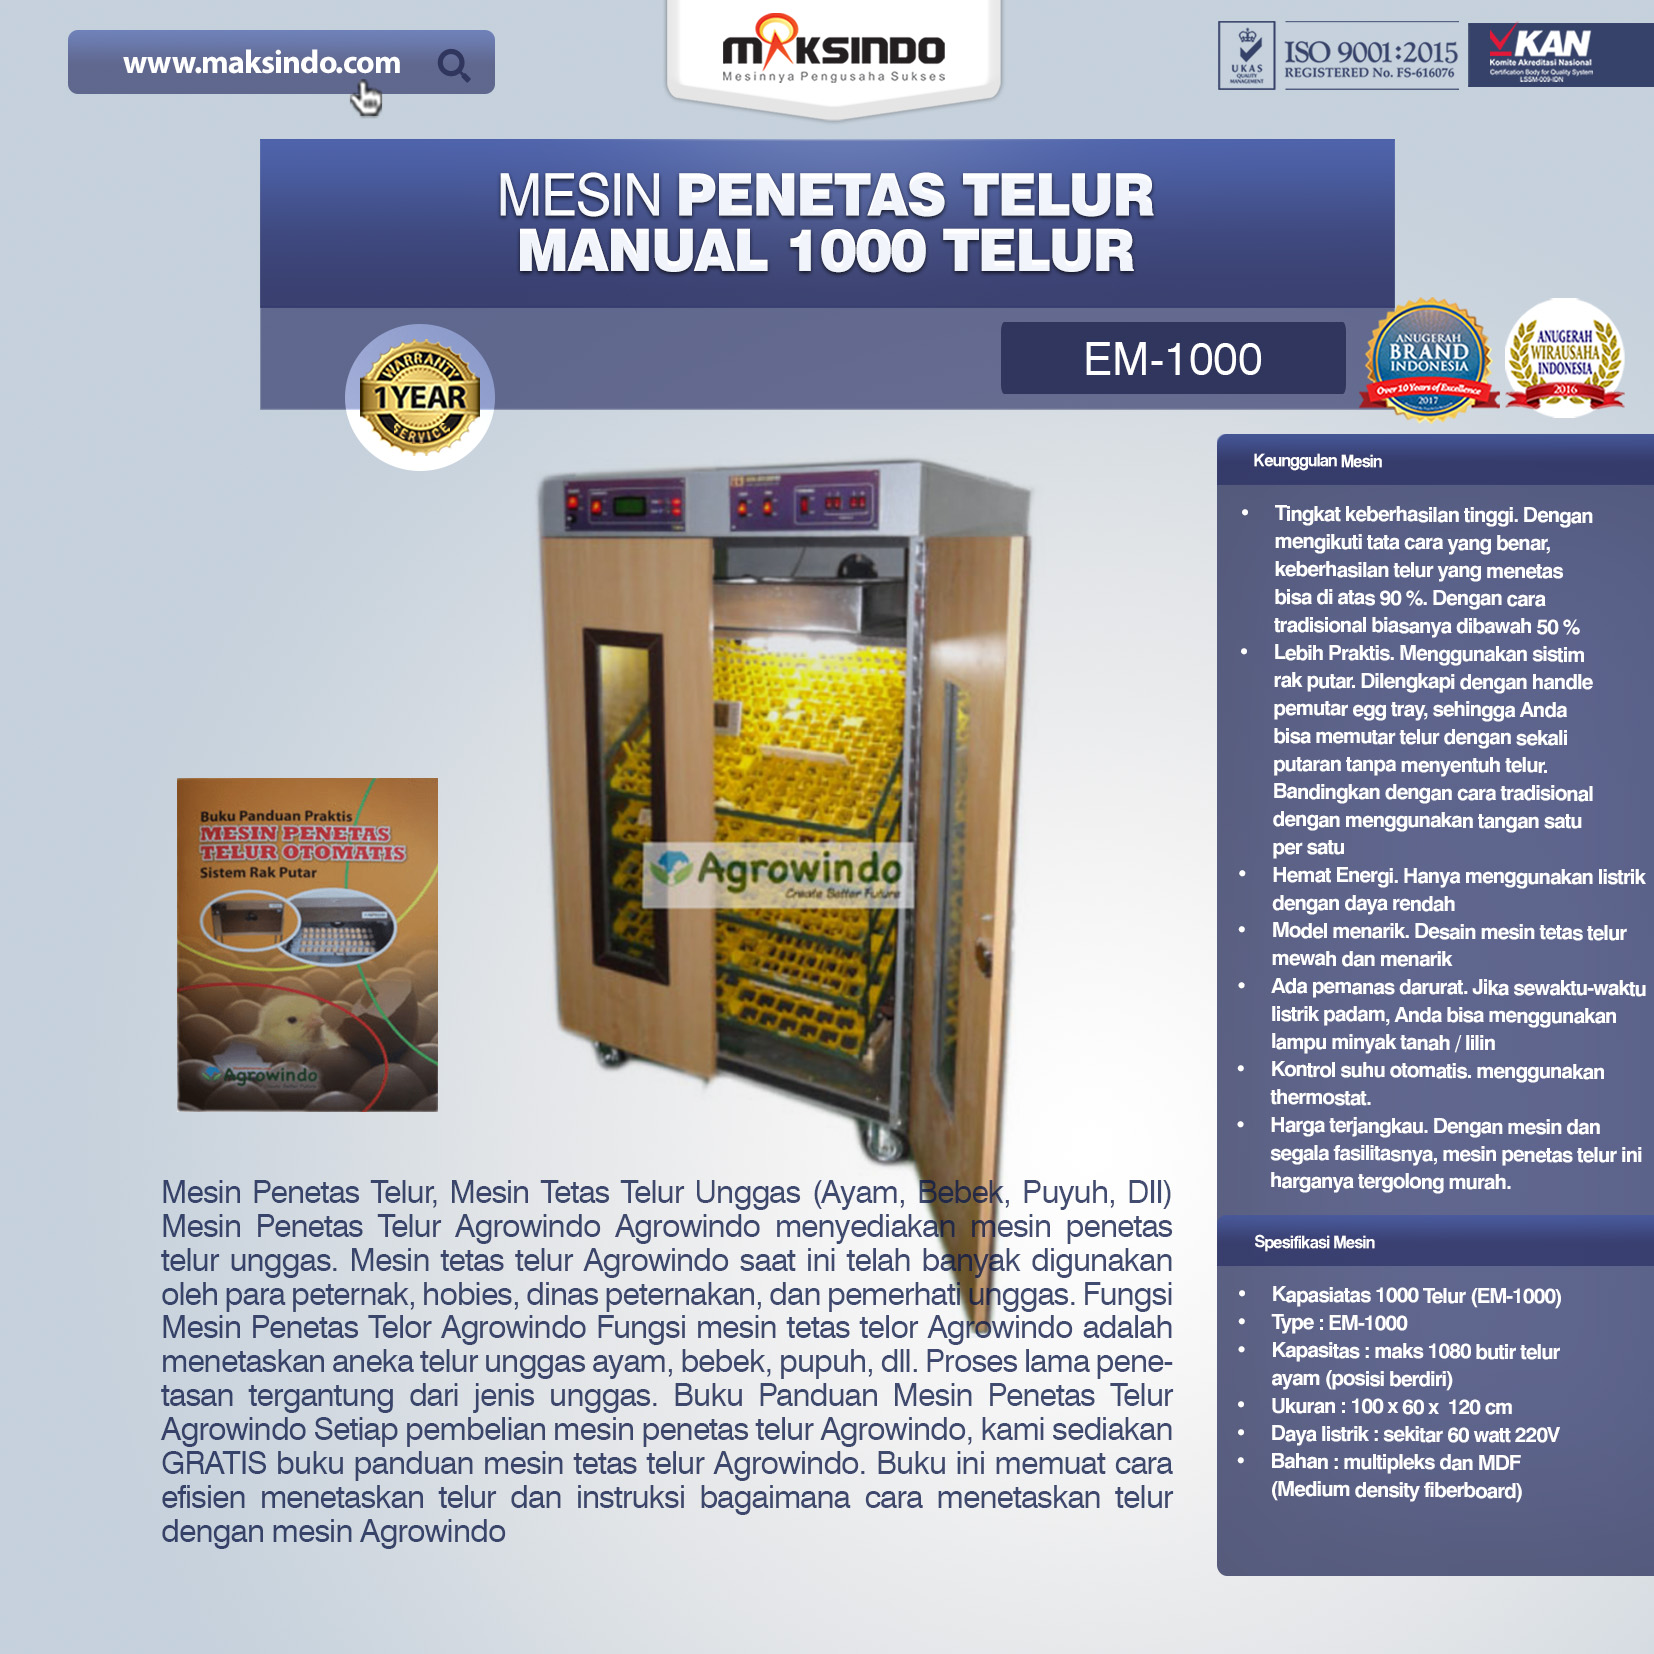 Jual Mesin Penetas Telur Manual 1000 Telur (EM-1000) di Banjarmasin